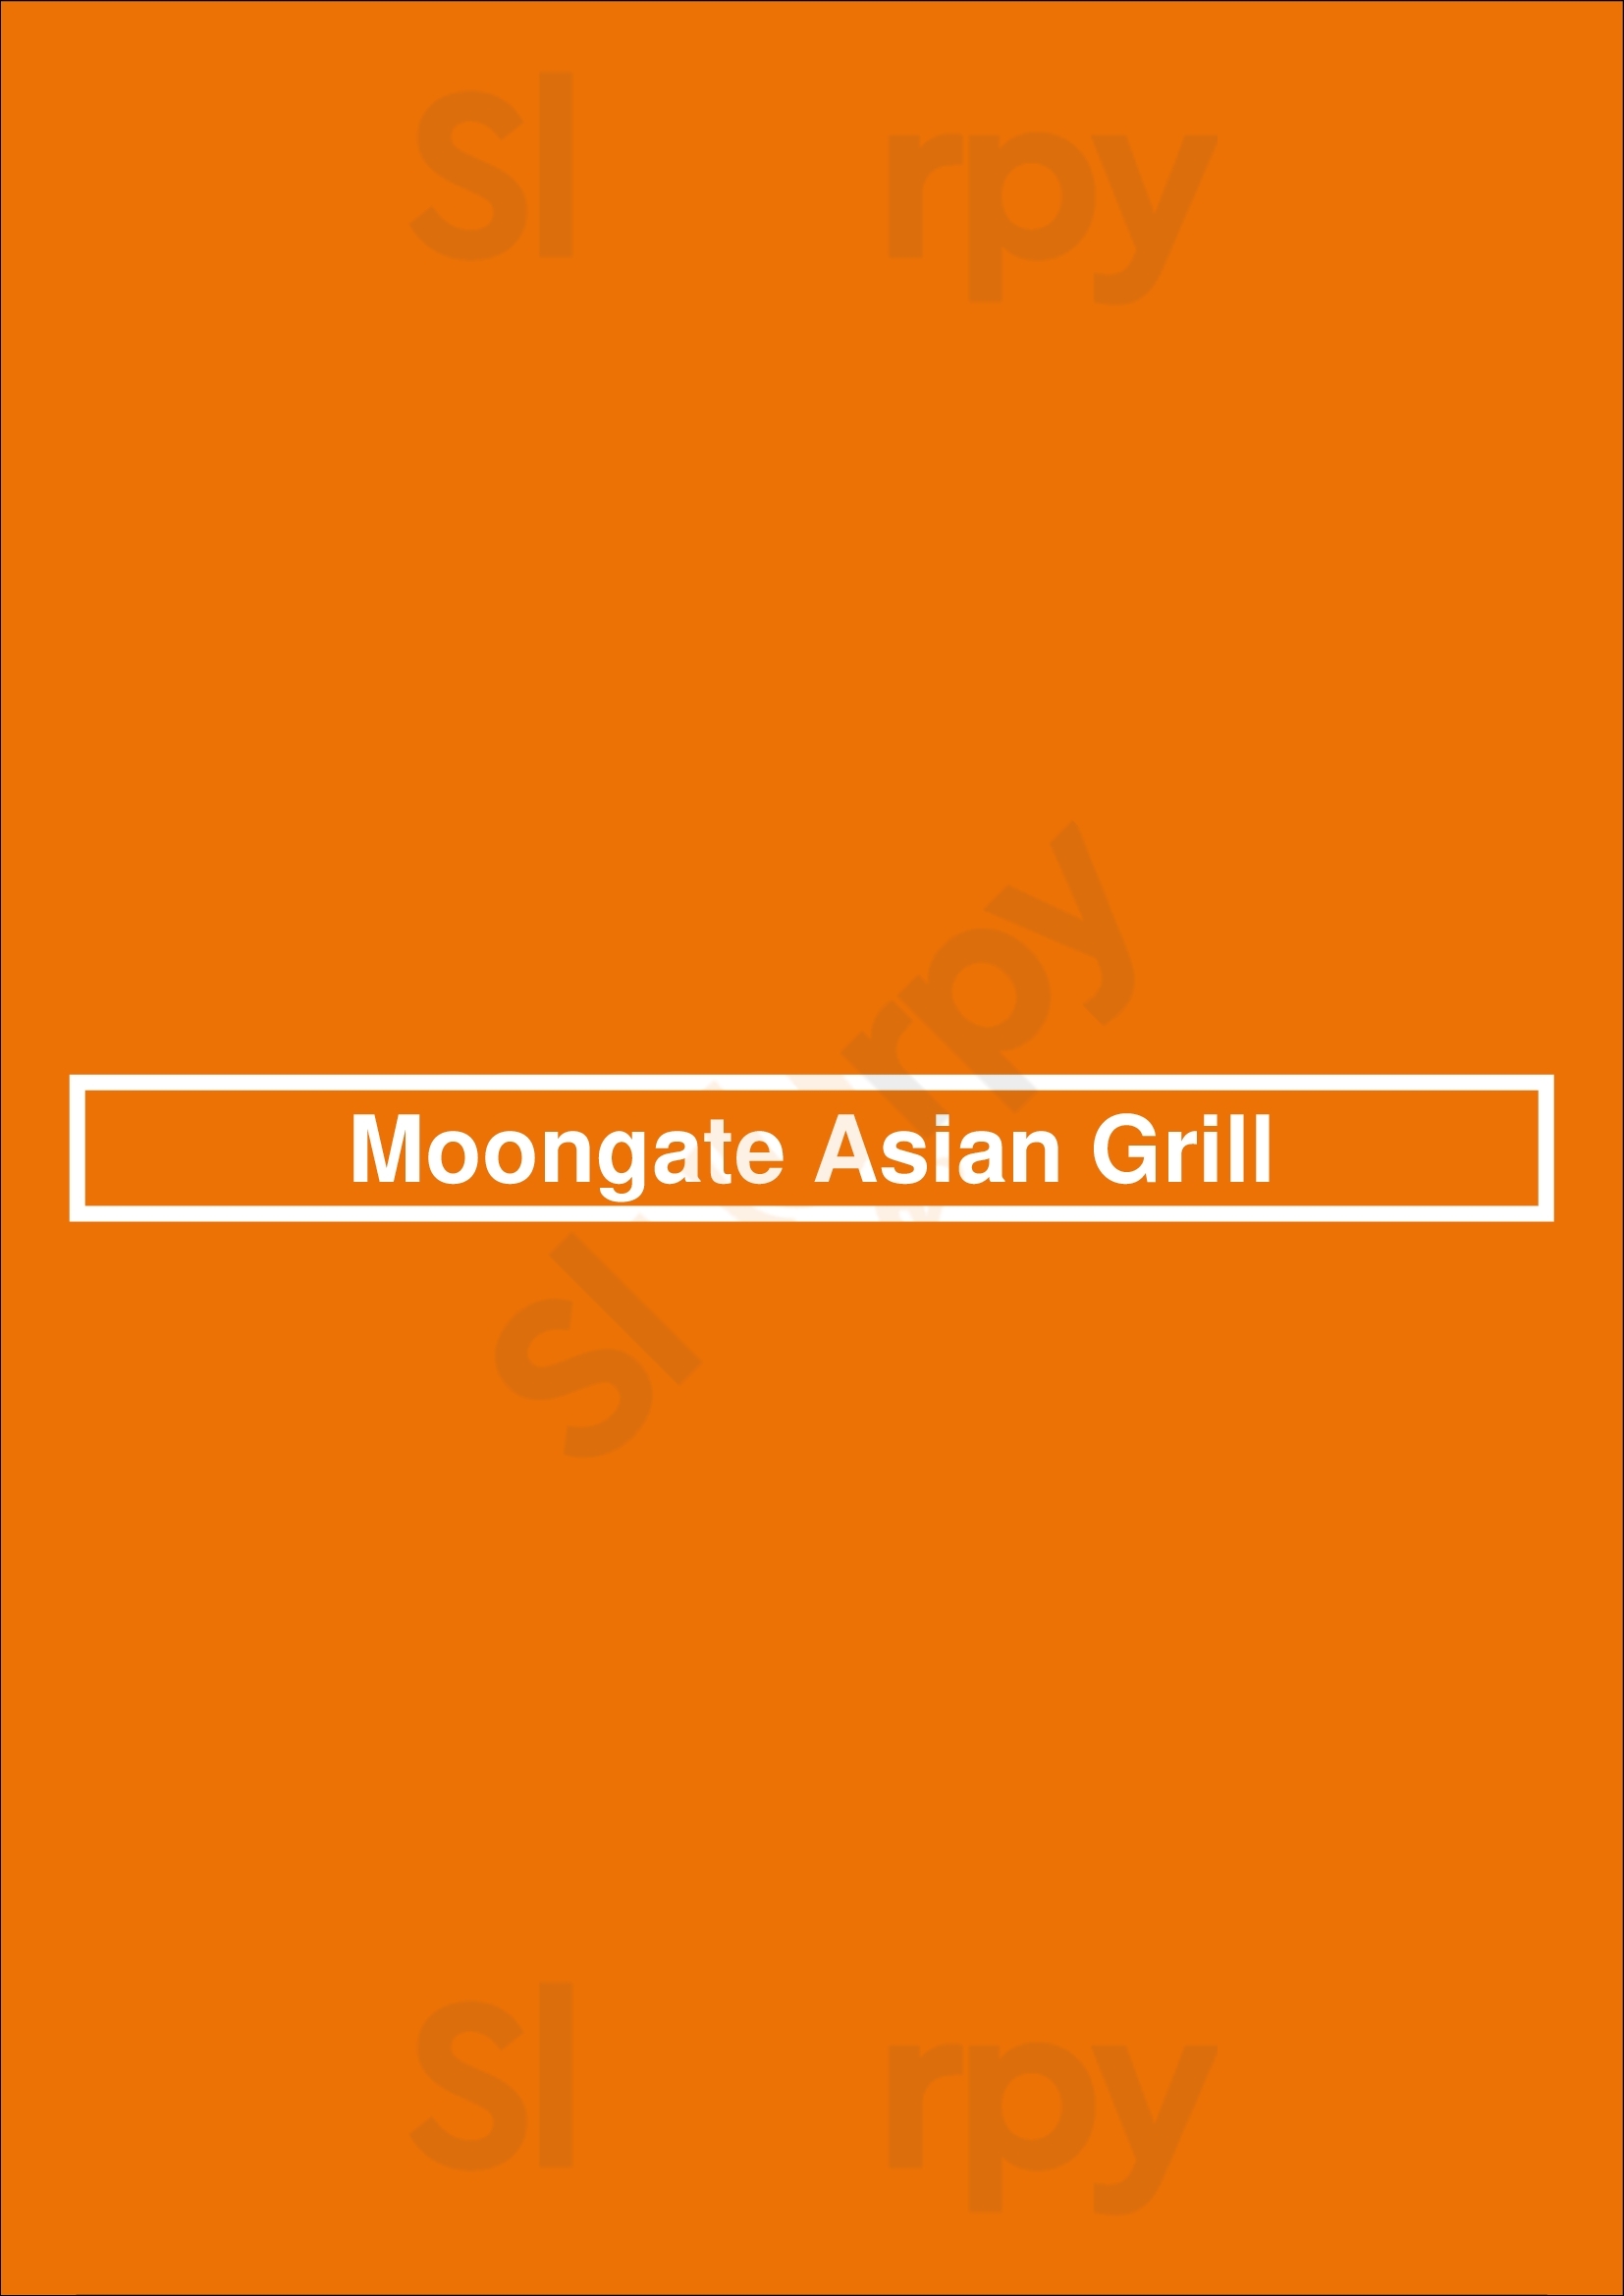 Moongate Asian Grill Denver Menu - 1